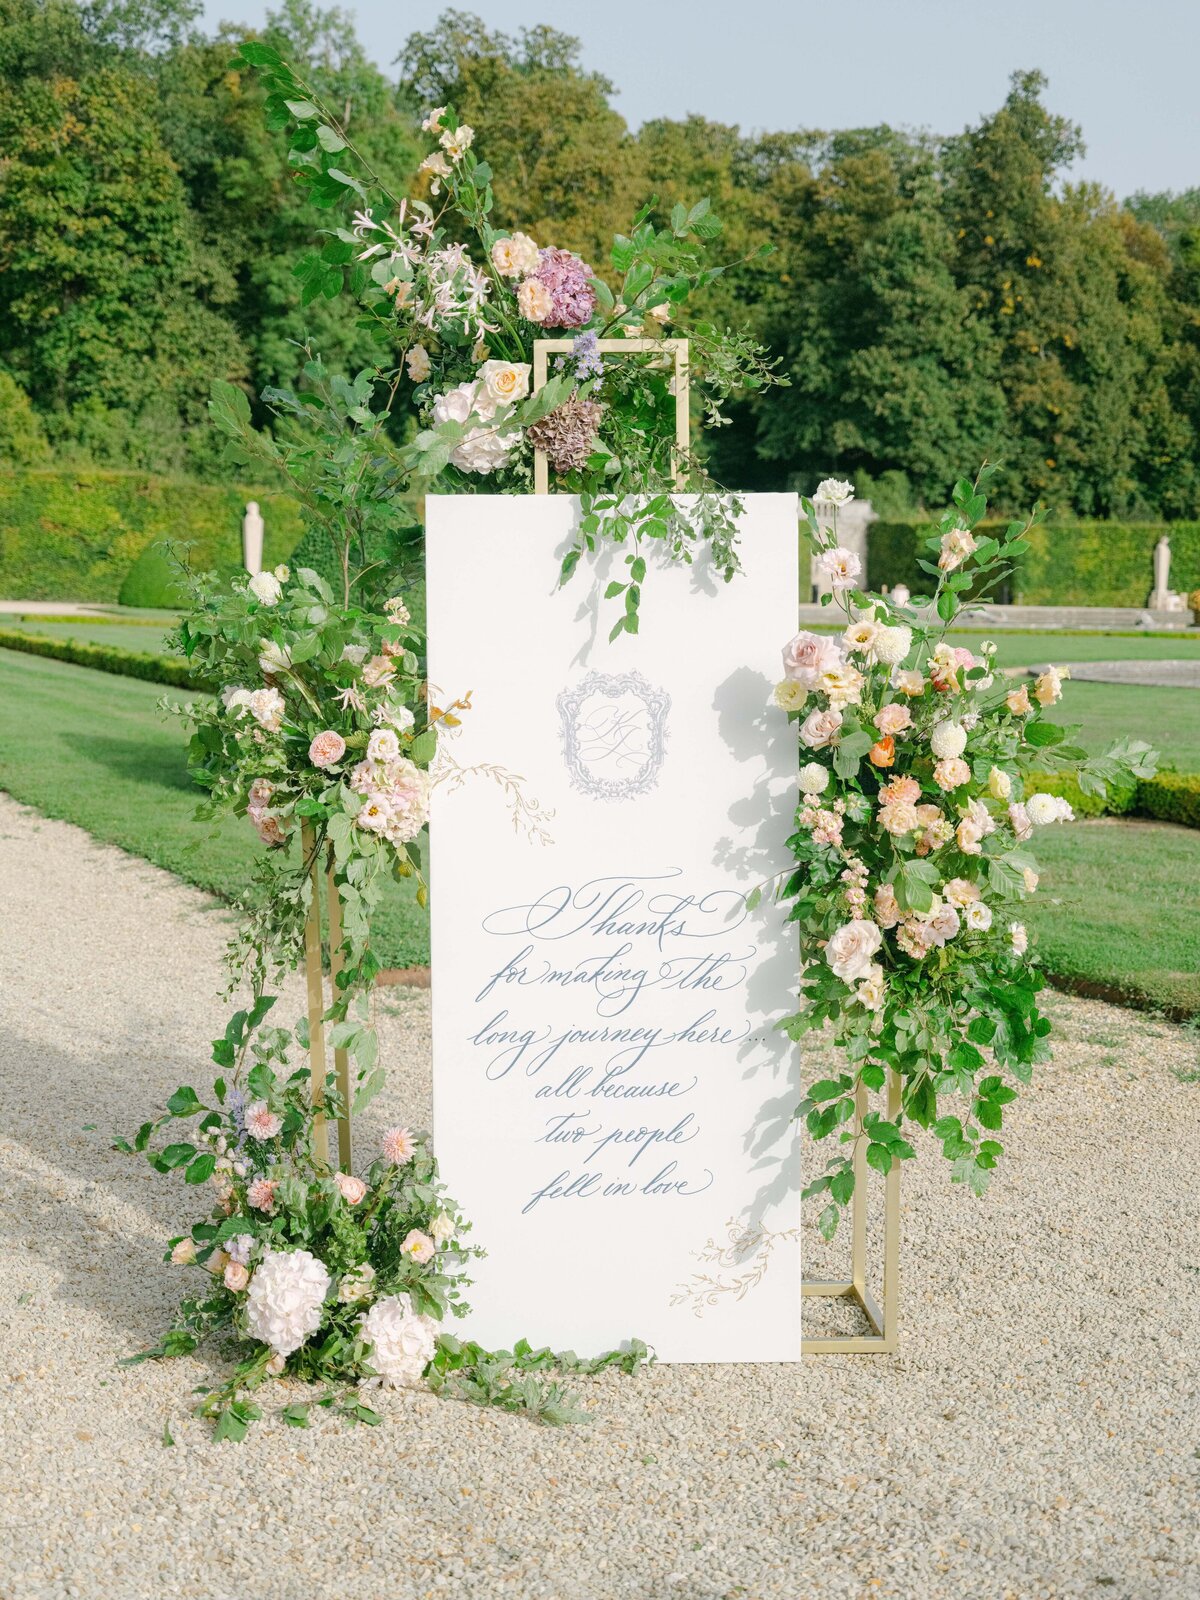 Chateau-Vaux-le-vicomte-wedding-florist-FLORAISON27